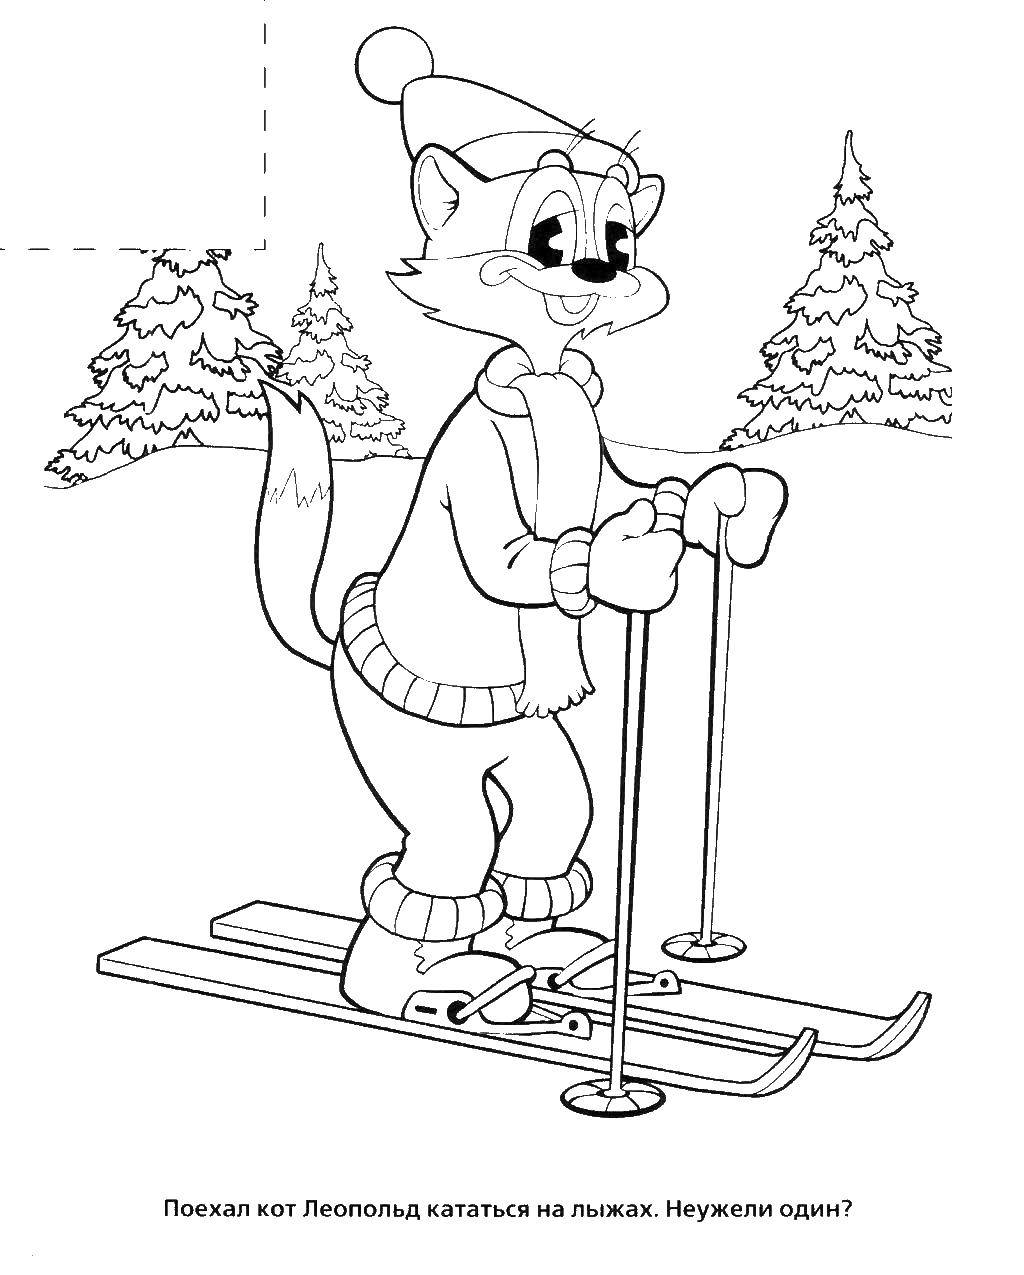 Раскраски про кота Леопольда для малышей  Кот леопольд катается на лыжах